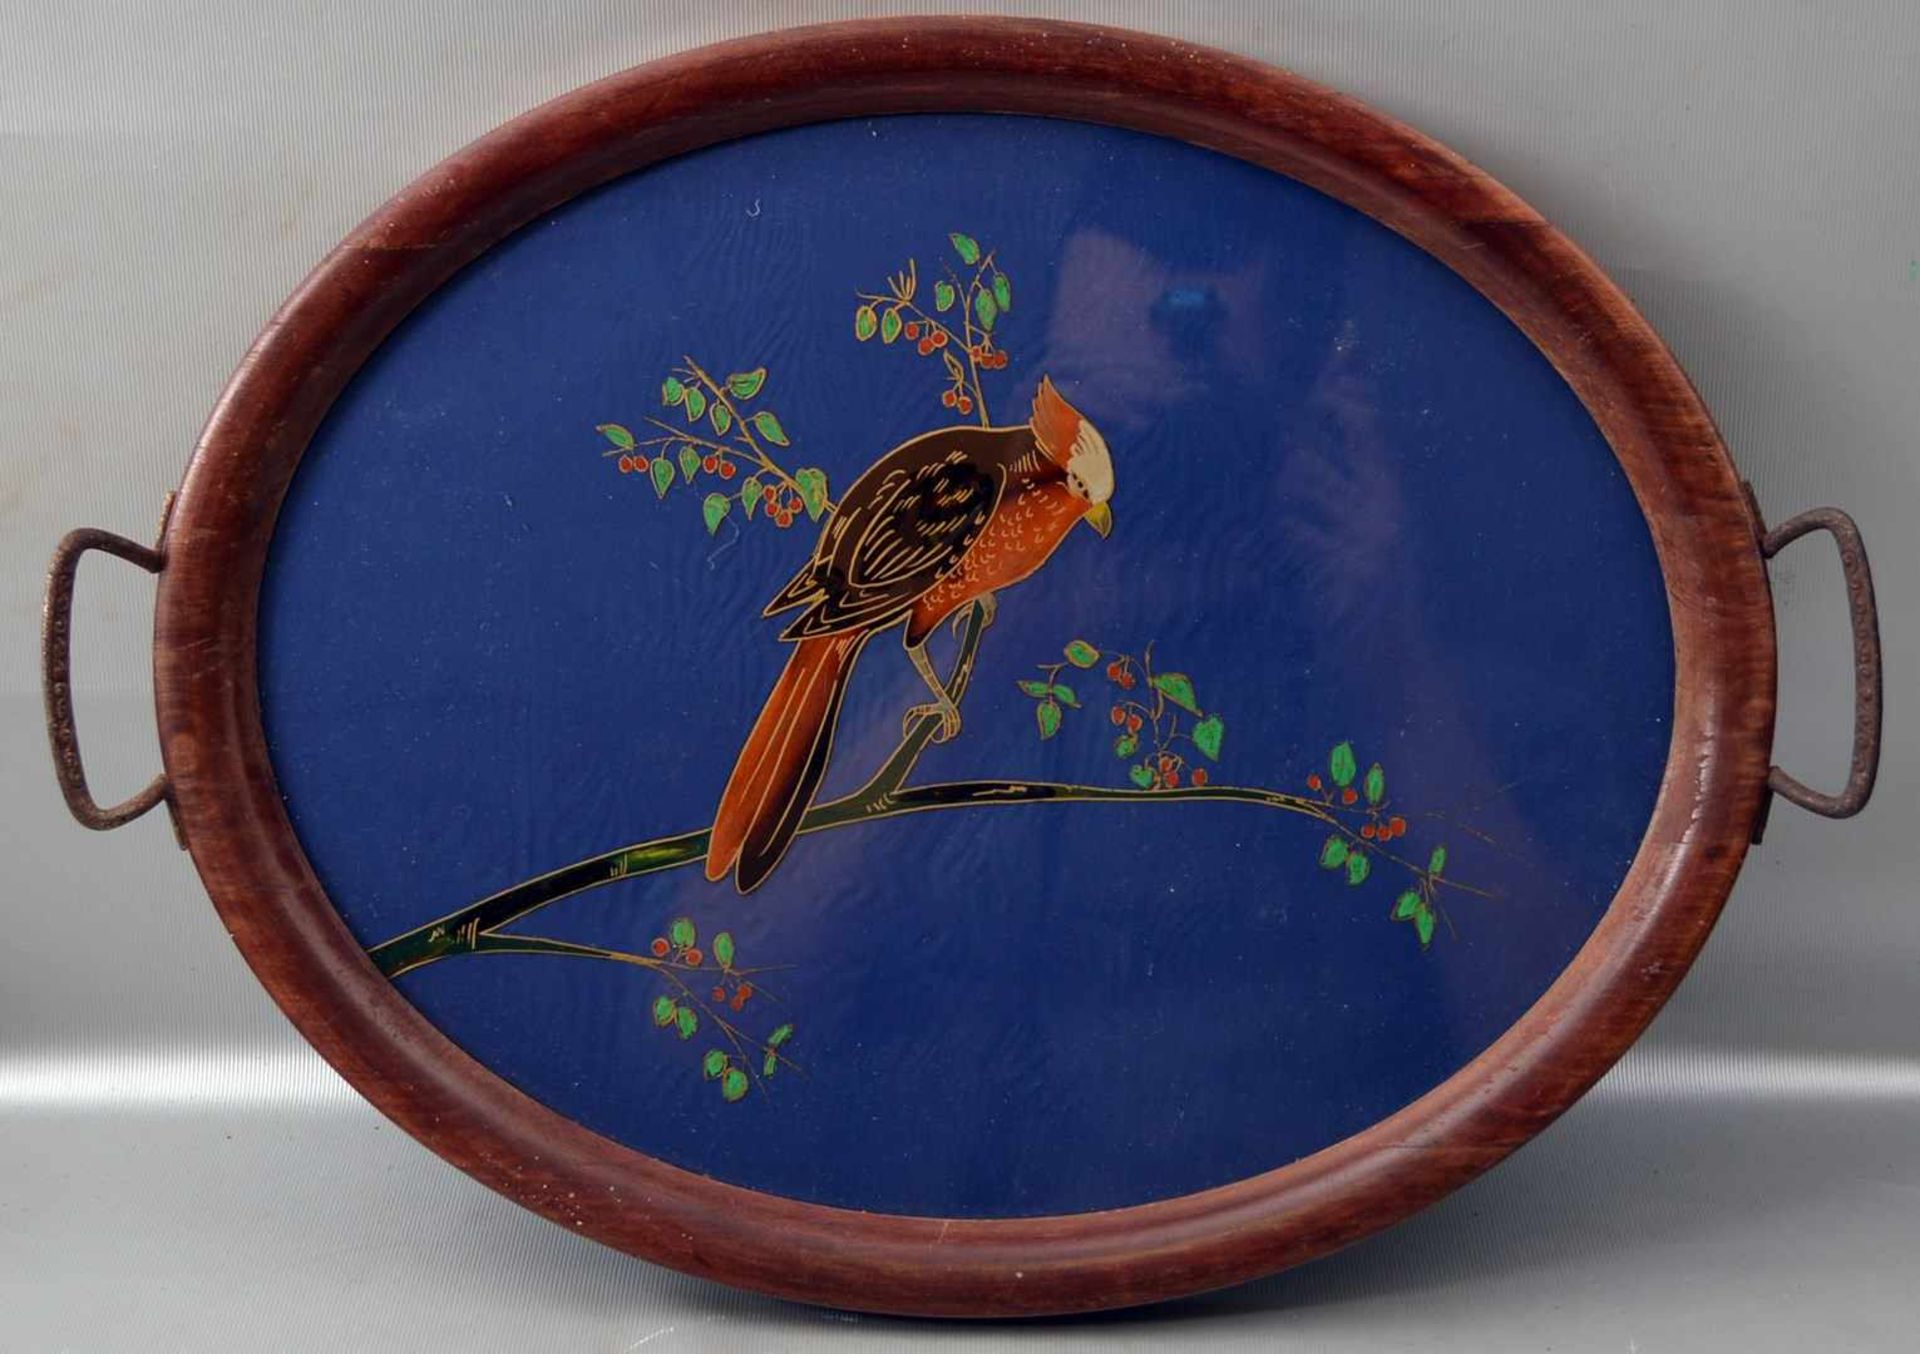 Tablett oval, Holzrahmen, zwei Griffe, Spiegel mit Vogel auf Ast bunt bemalt, 33 X 45 cm, um 1900